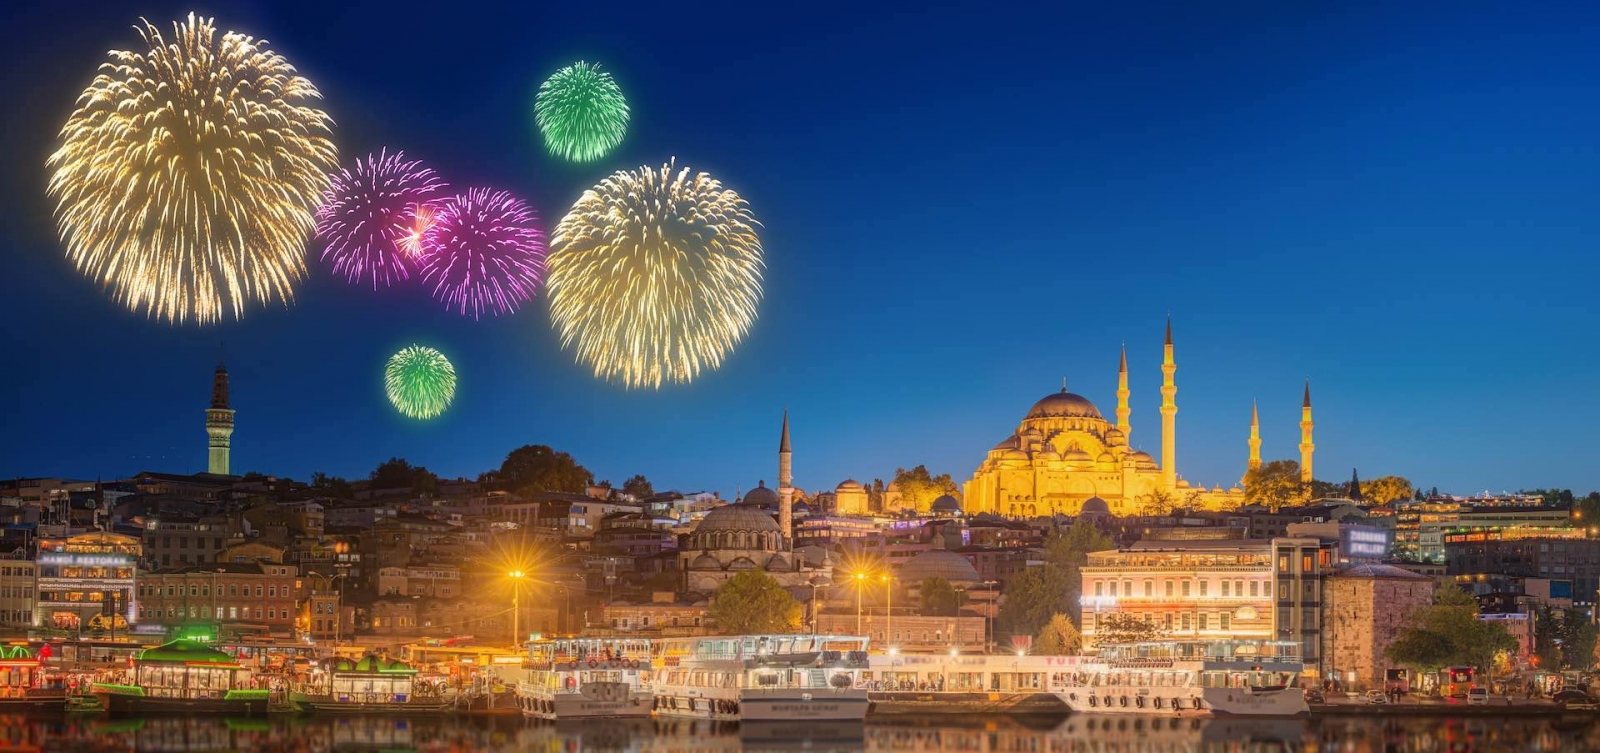 Красивый фейерверк и городской пейзаж Стамбула